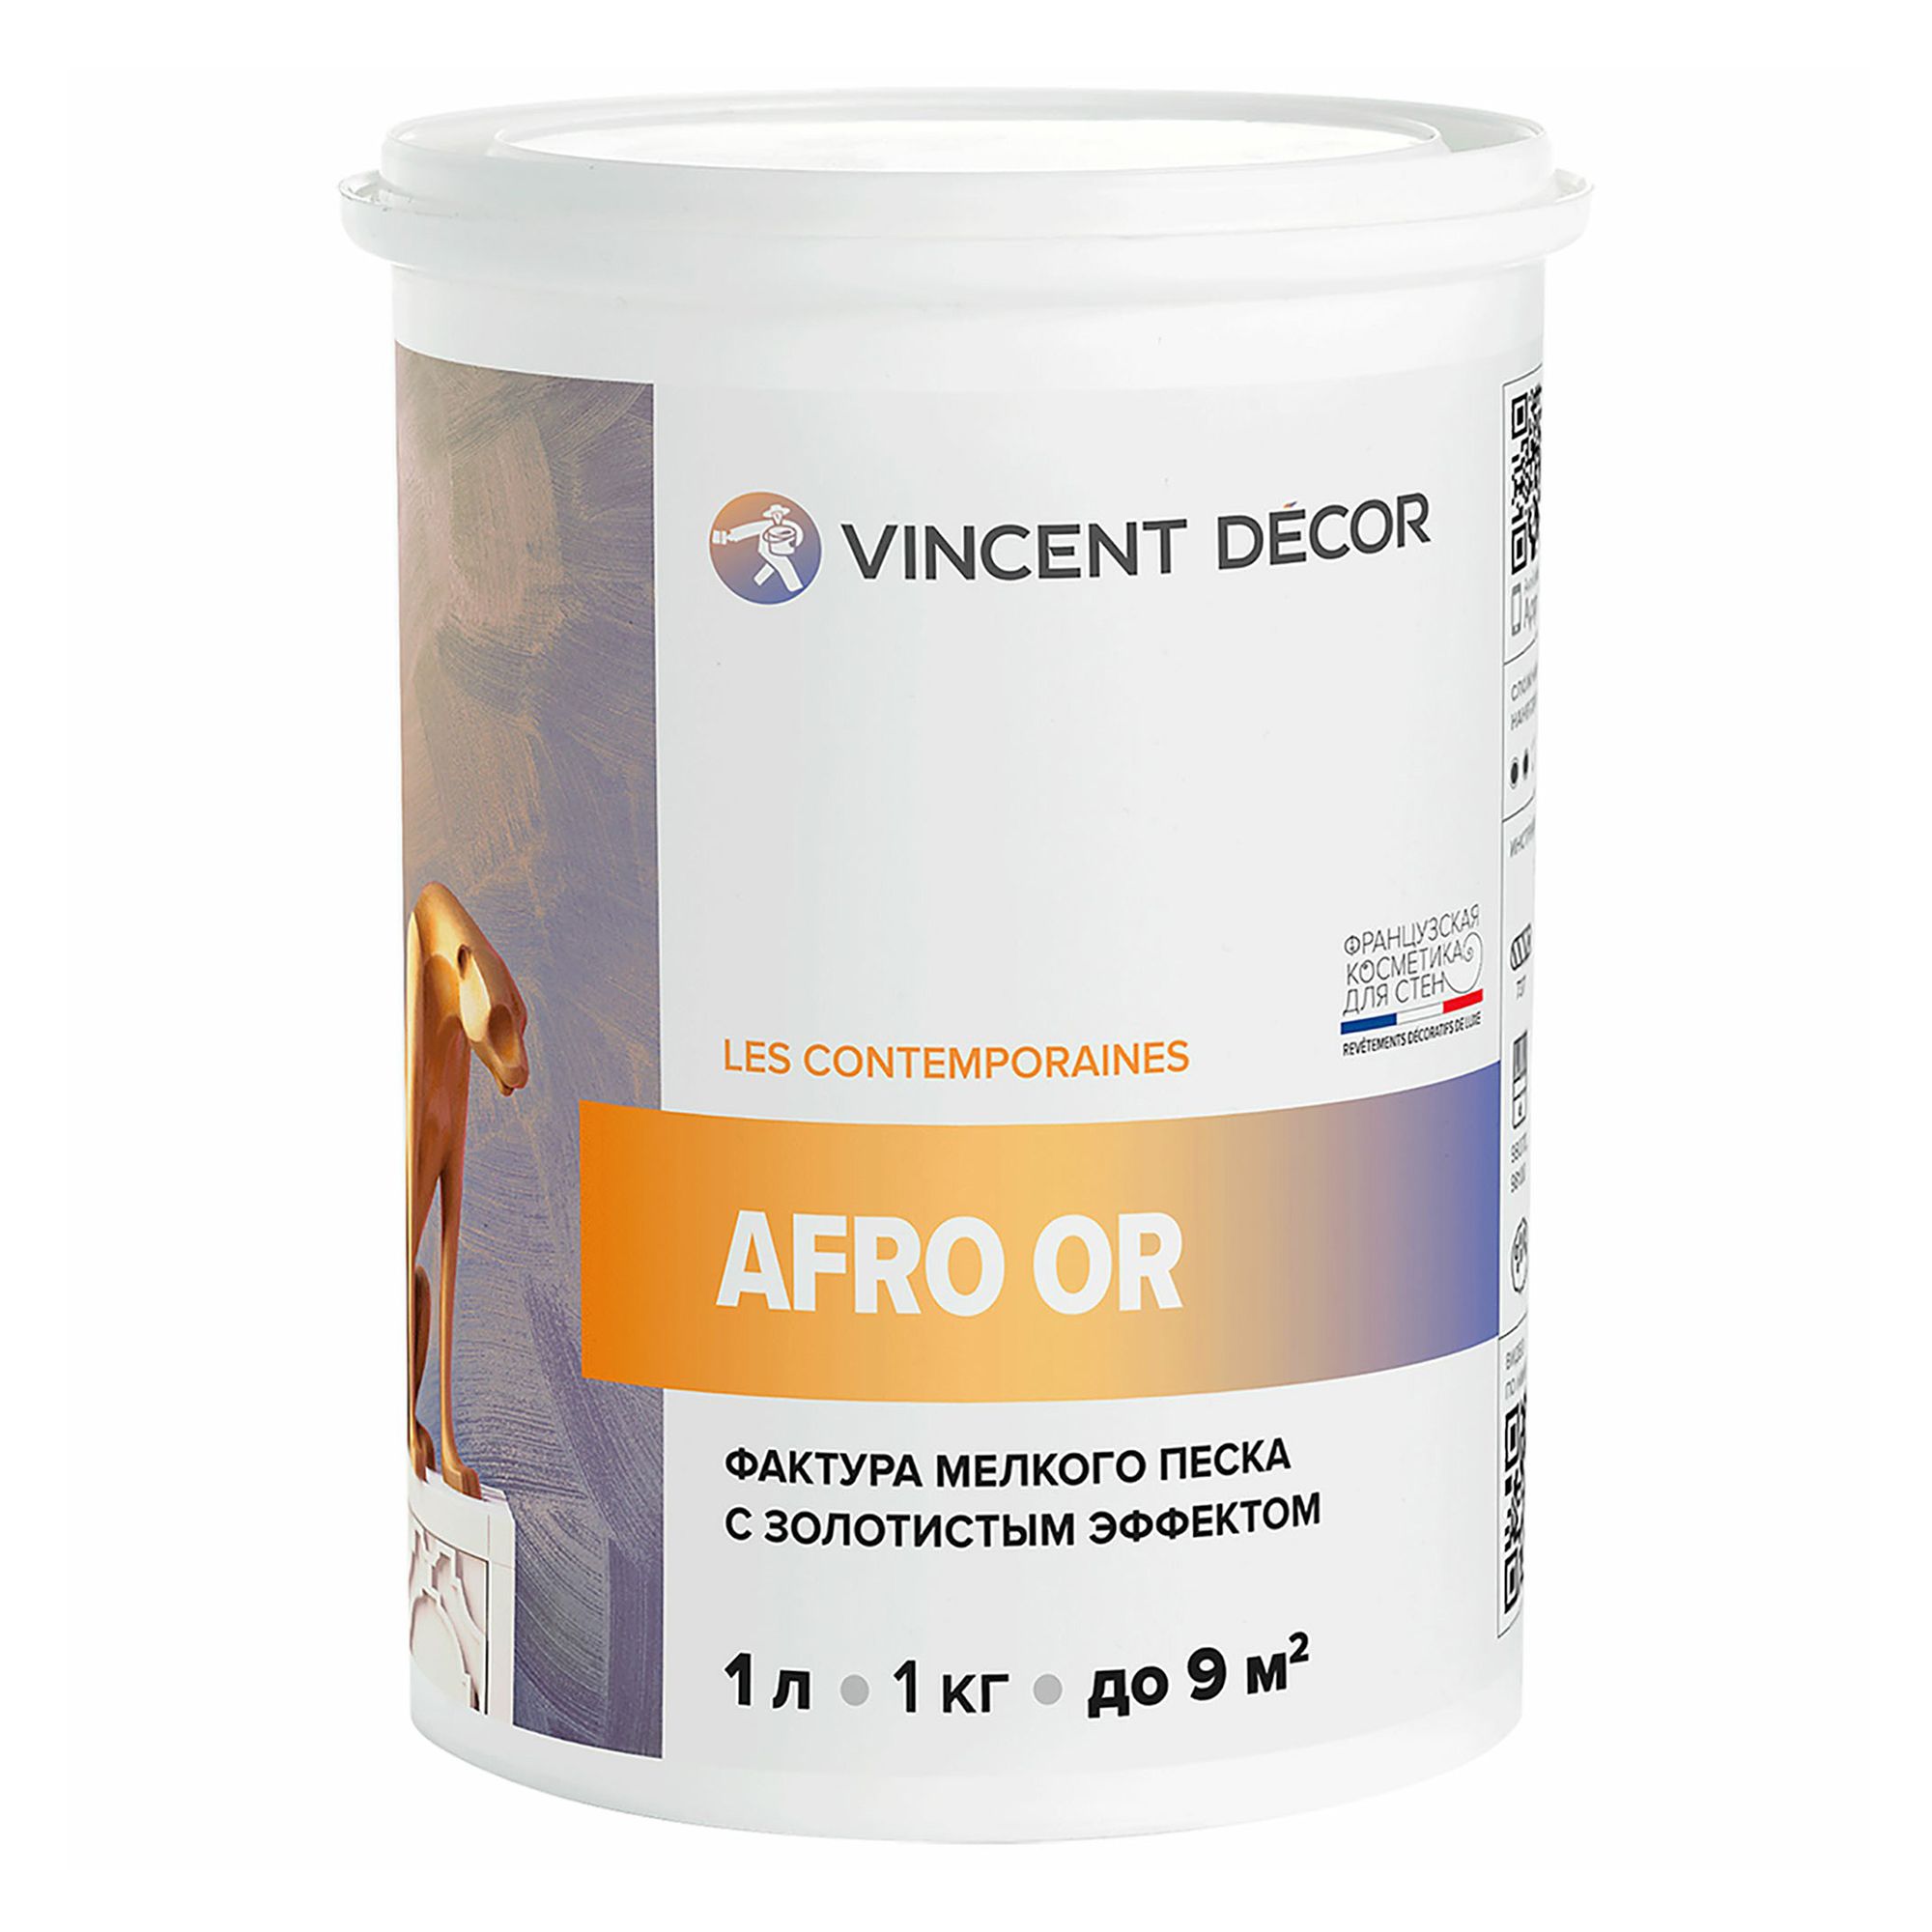 Декоративное покрытие Vincent Decor золотистый Afro Argent с фактурой мелкого песка 1 л